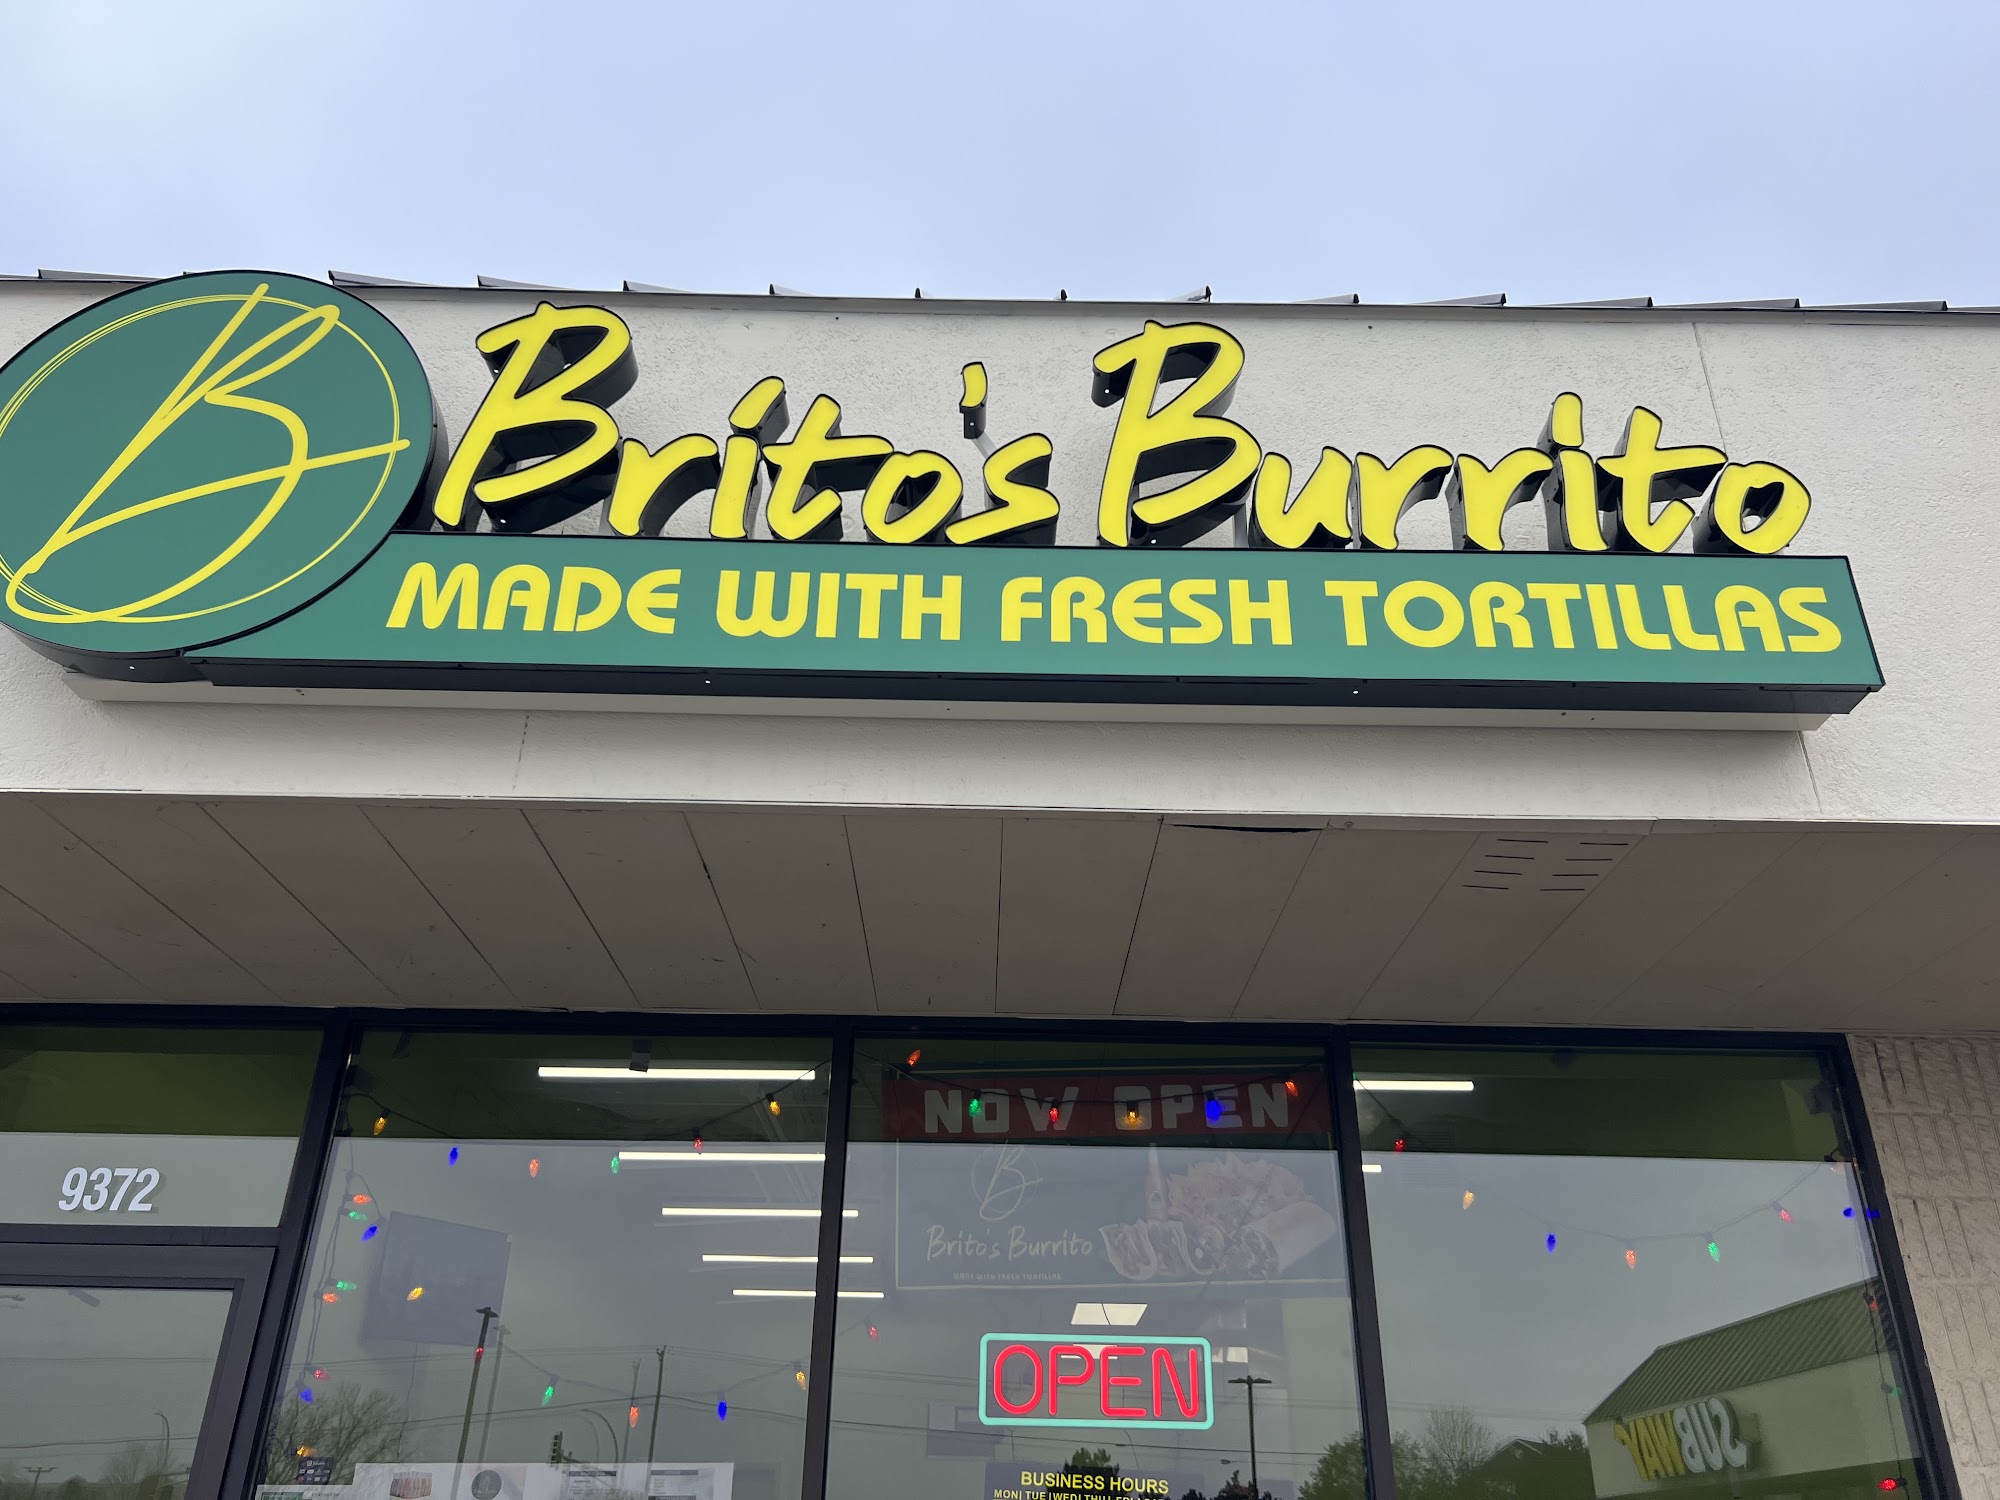 Brito’s Burrito